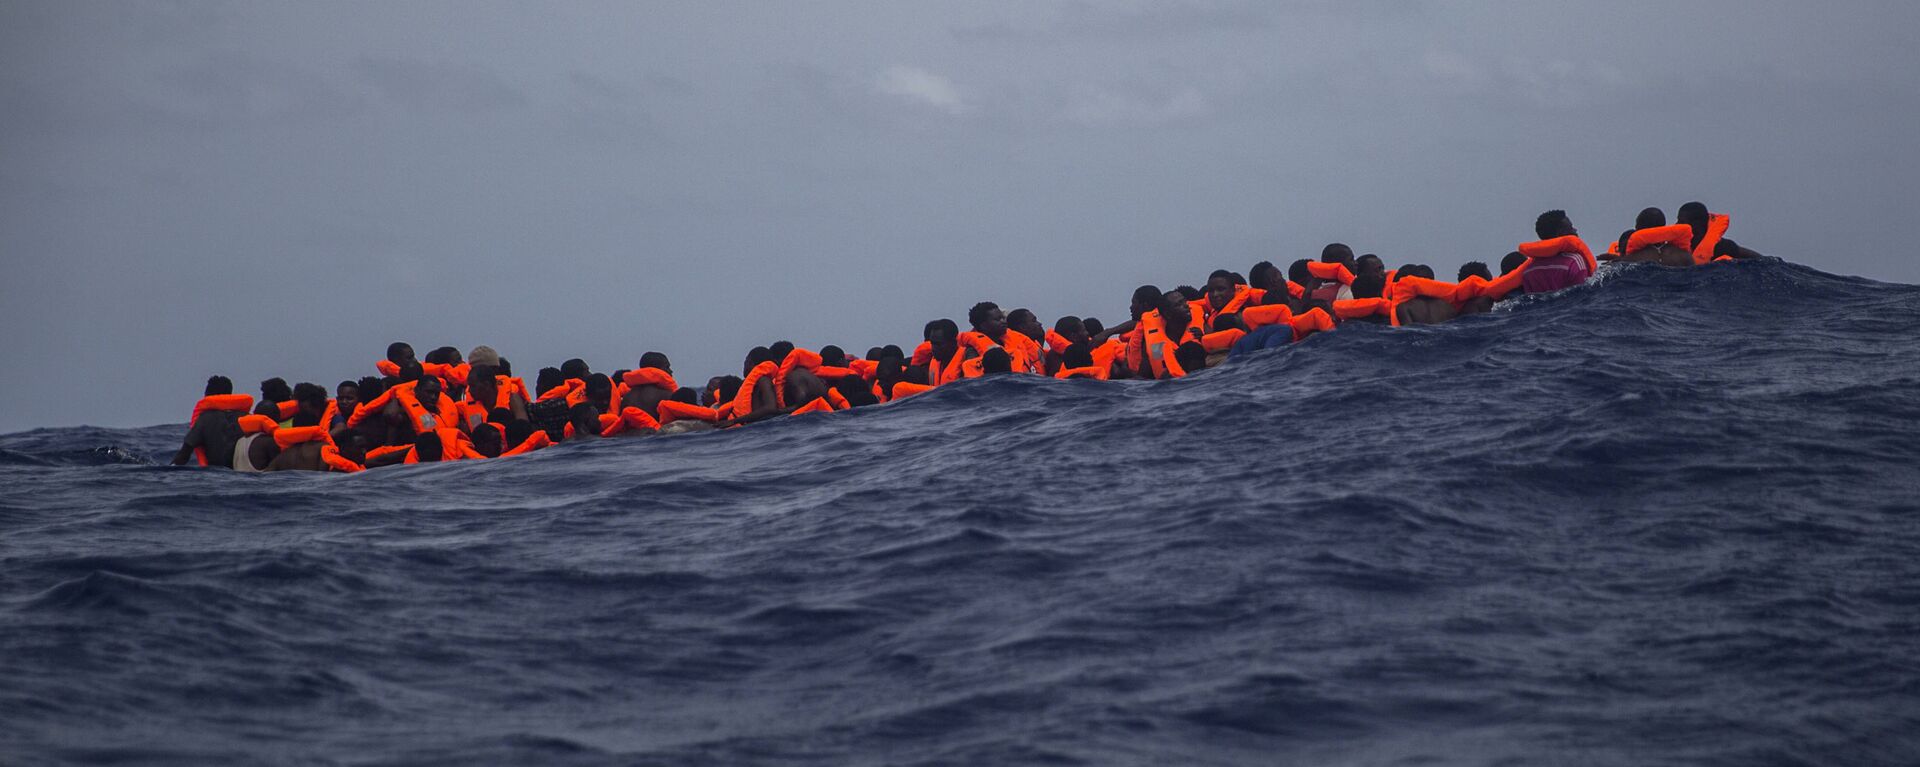 Inmigrantes  esperan ser rescatados en la mitad del mar Mediterráneo - Sputnik Mundo, 1920, 20.08.2020